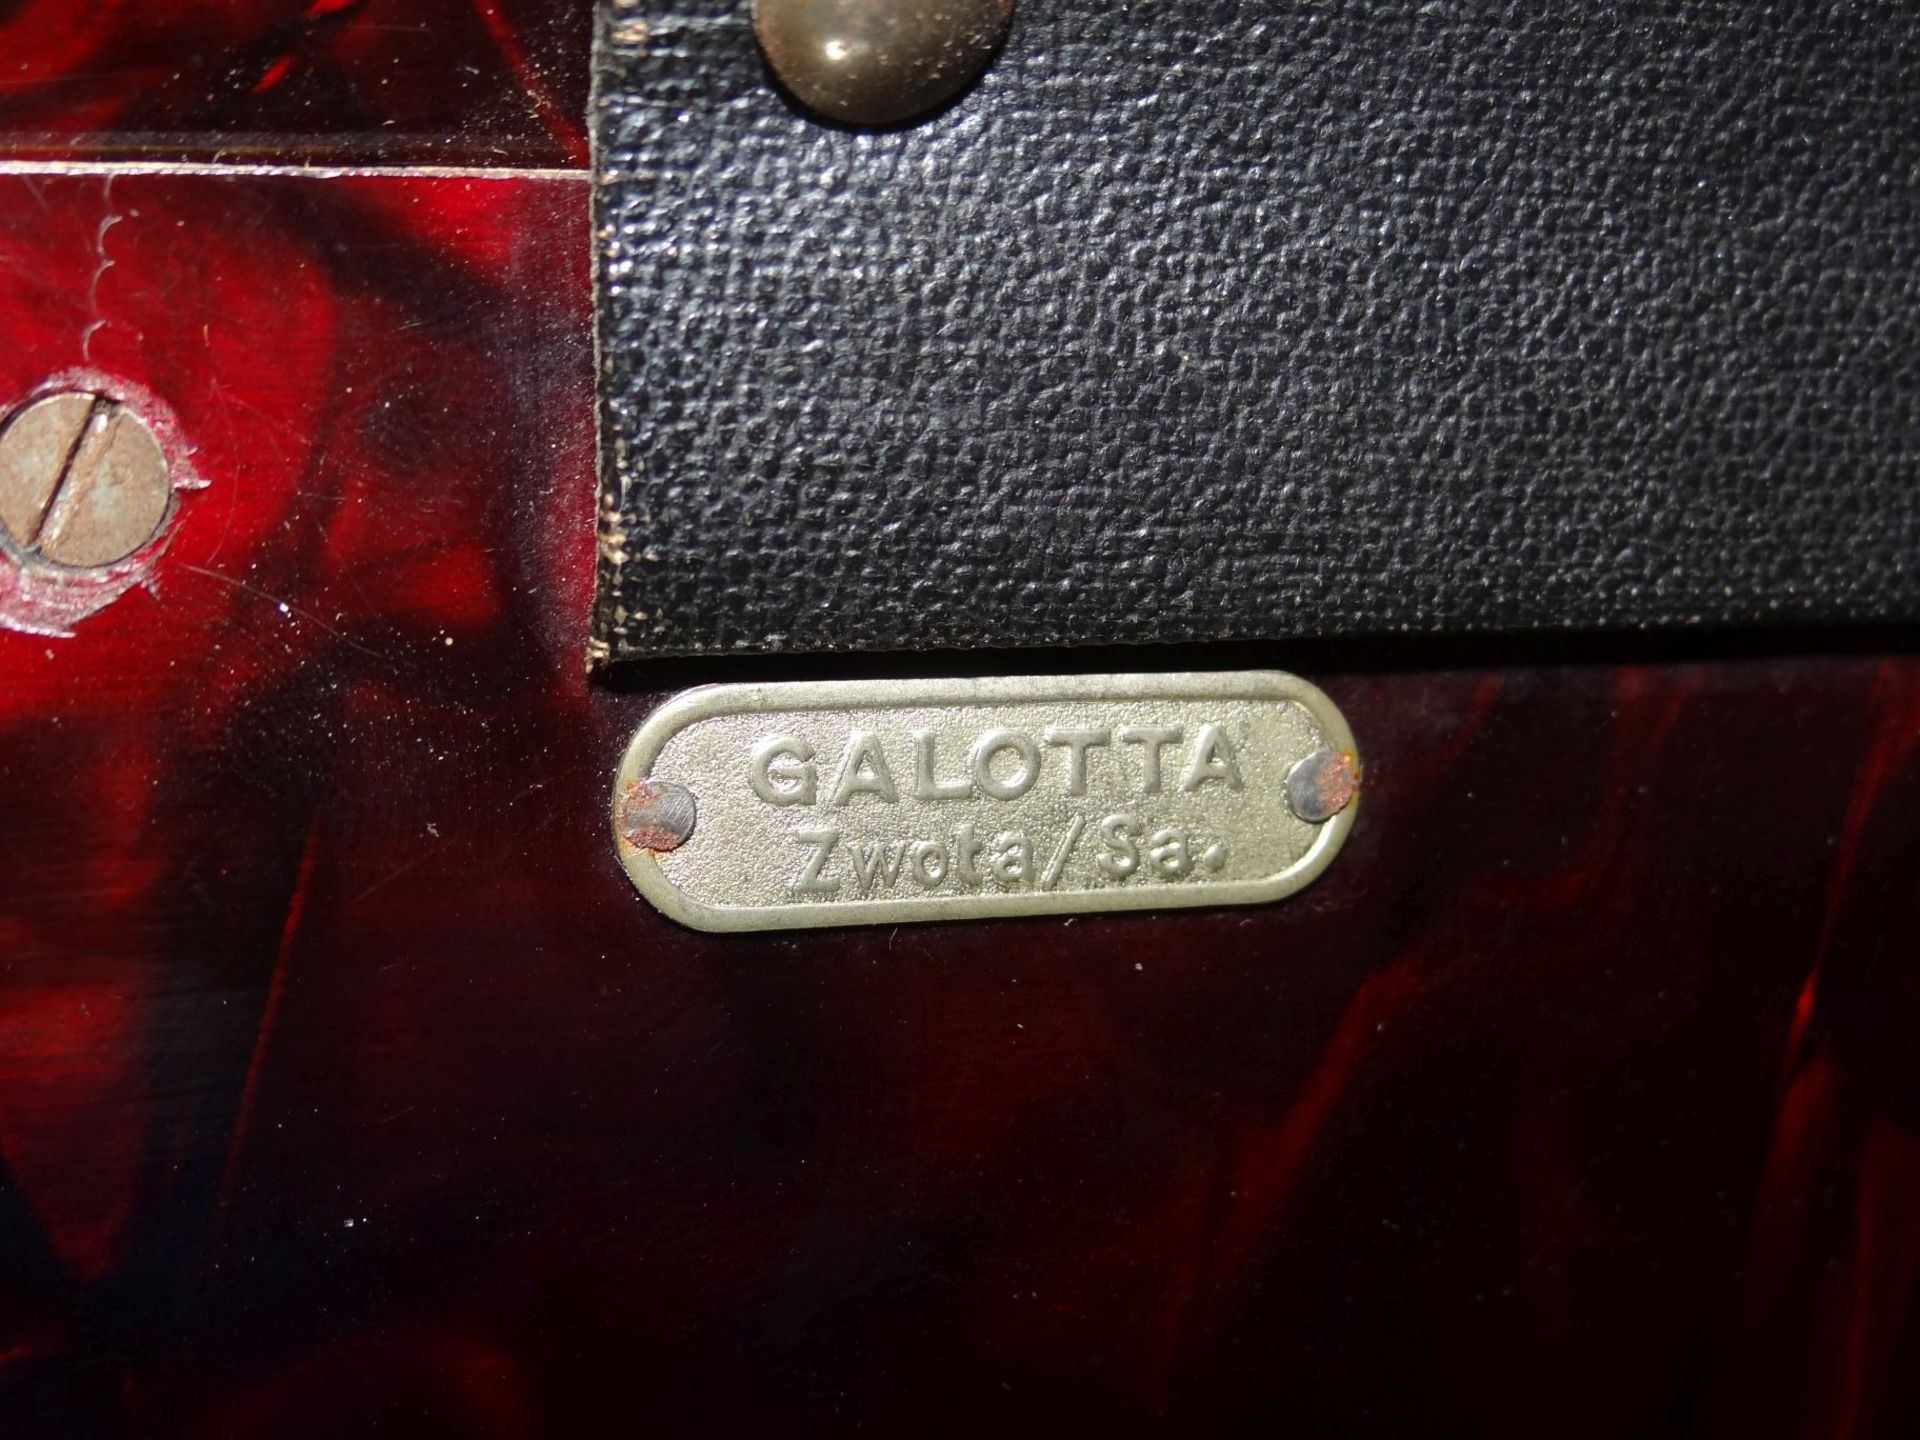 Akkordeon "Galotta" Zwota/Sa., gut erhalten und spielbereit - Bild 10 aus 10